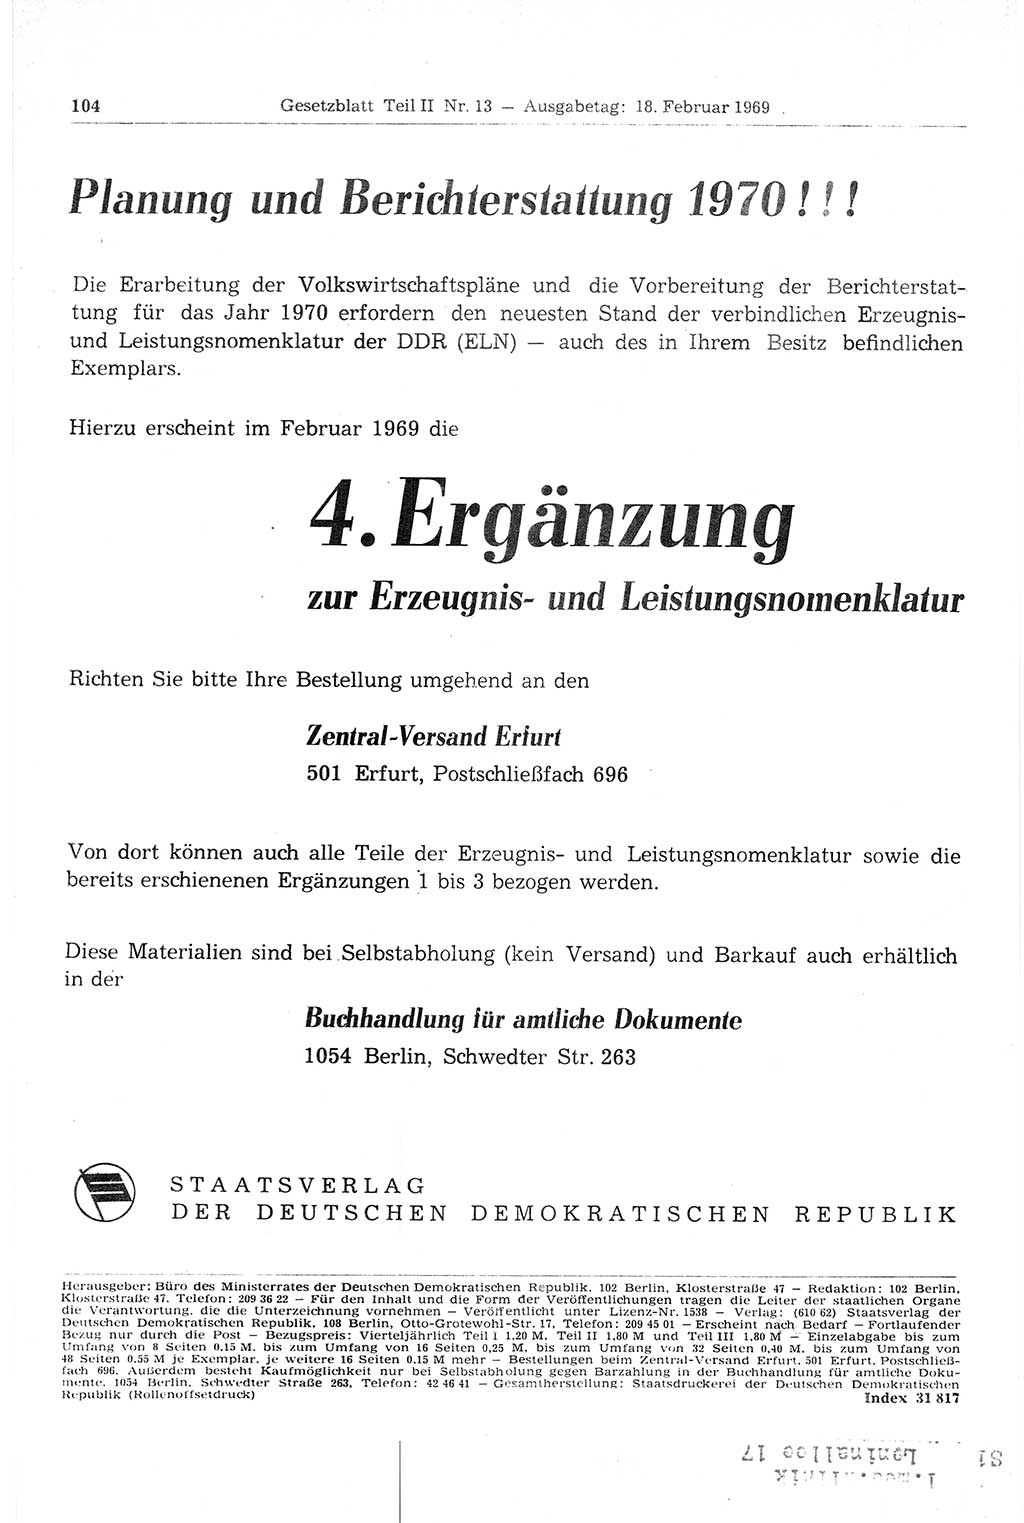 Gesetzblatt (GBl.) der Deutschen Demokratischen Republik (DDR) Teil ⅠⅠ 1969, Seite 104 (GBl. DDR ⅠⅠ 1969, S. 104)